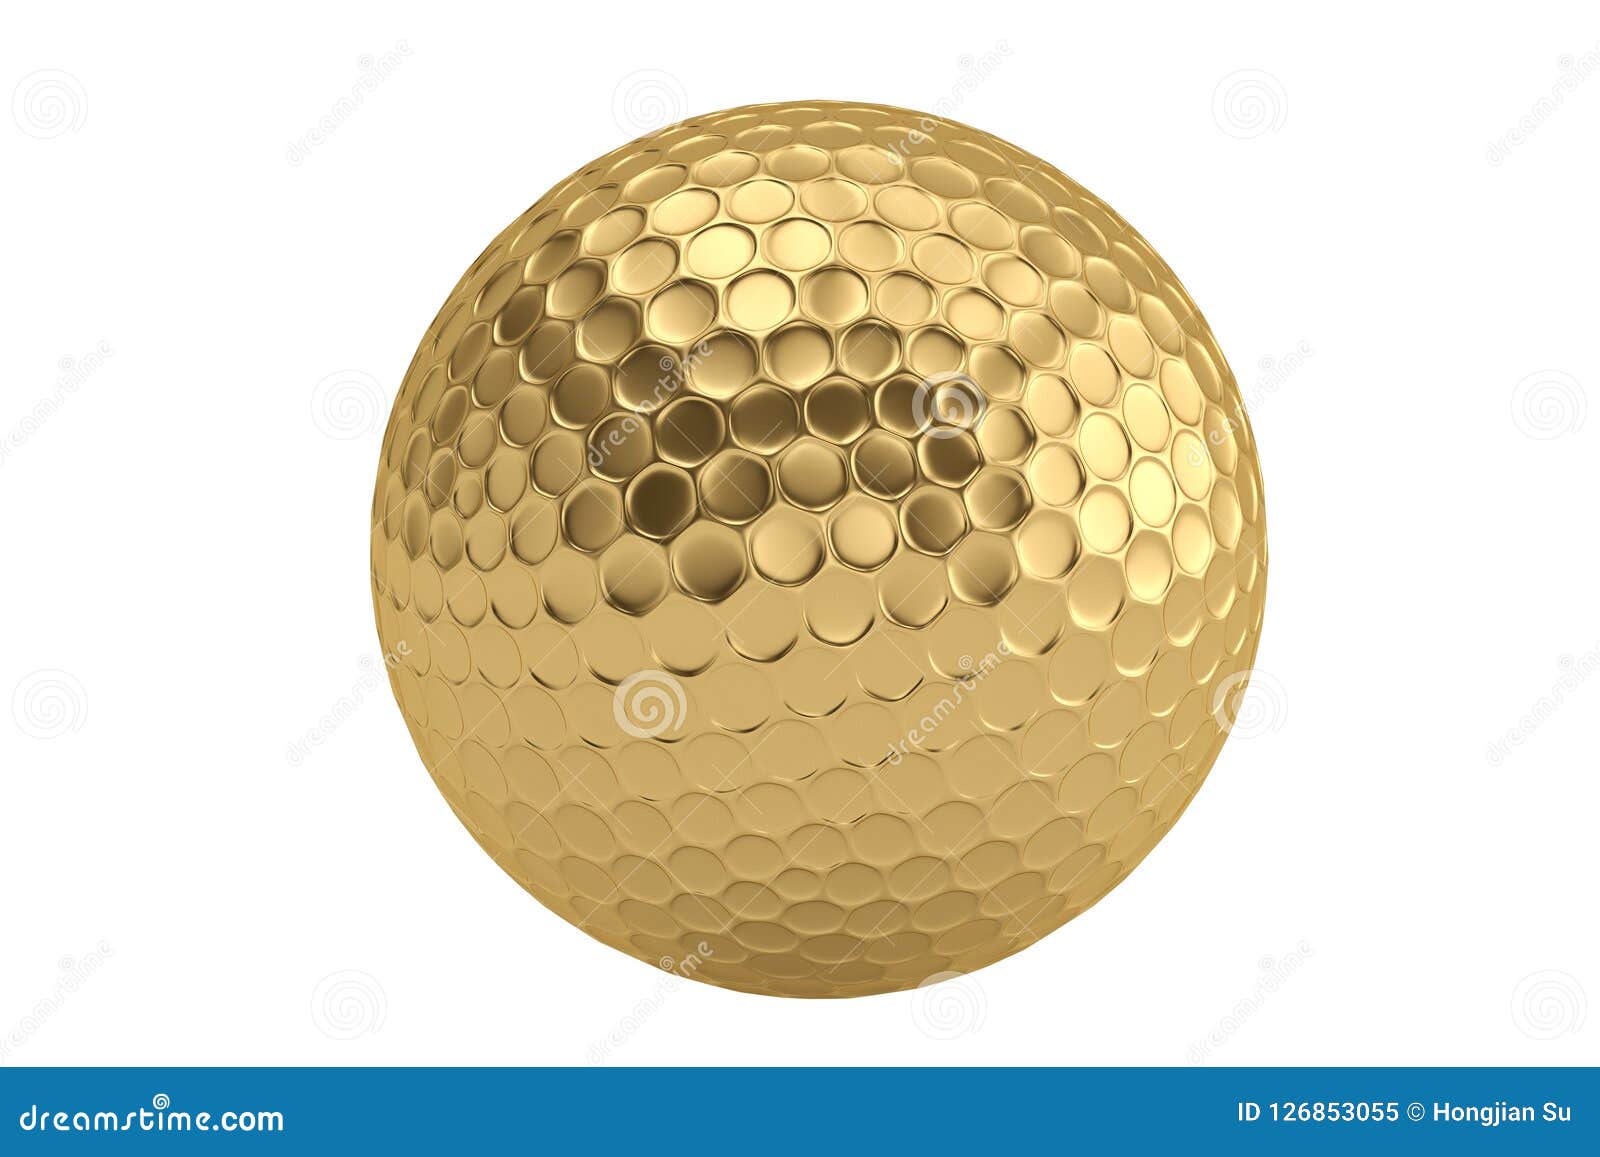 Golden Golf Ball Isolatedon White Background. 3D Illustration. Stock ...